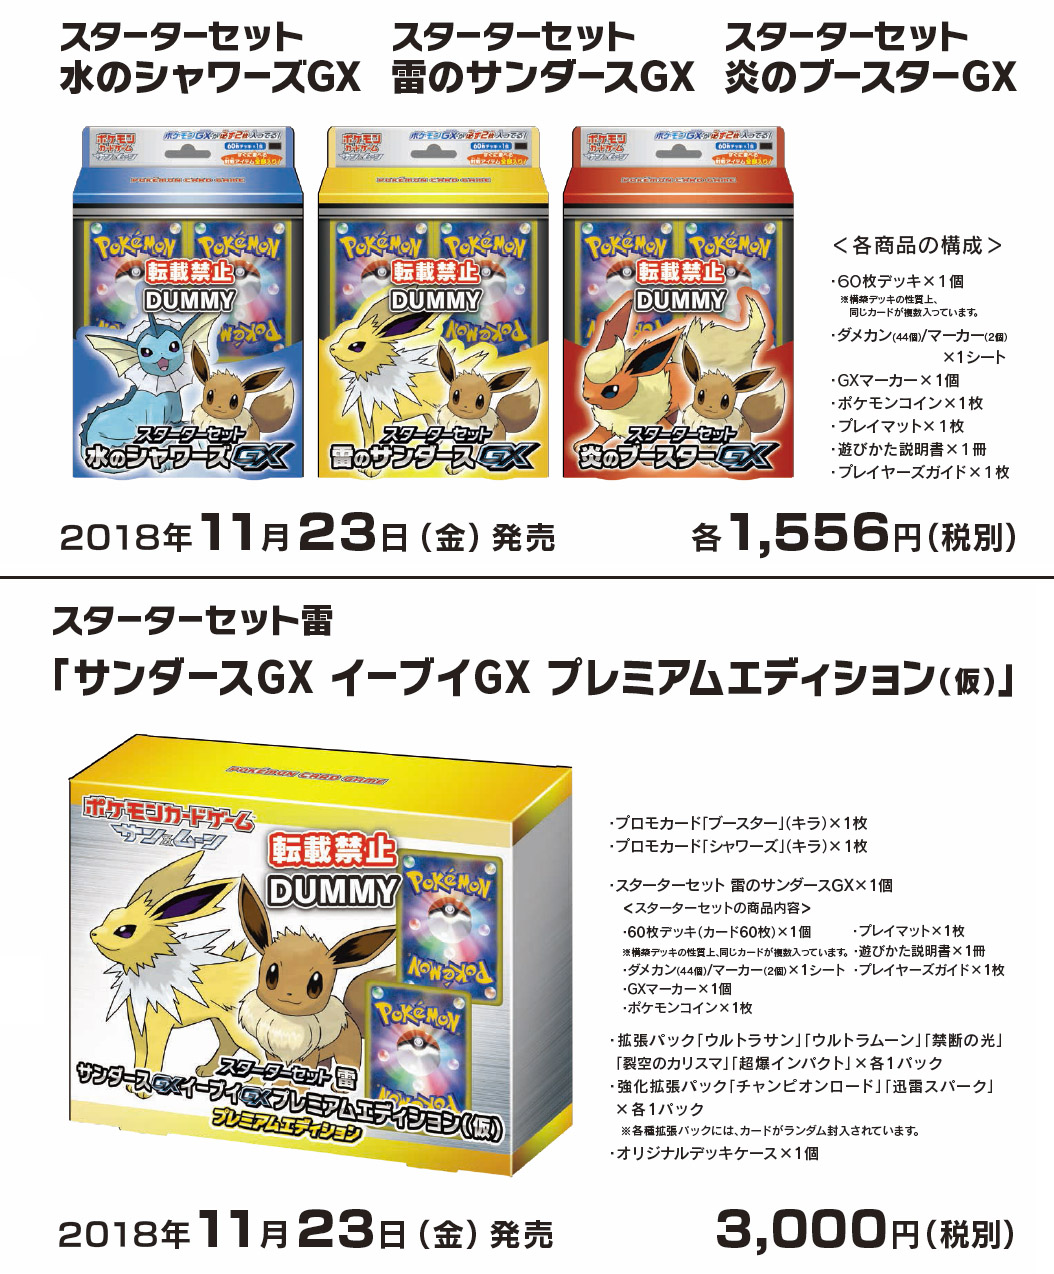 REV 代購/預購: ポケモンカードゲーム サン&ムーン スターターセット 4種 ("Pokemon Card Game Sun & Moon" Starter Set)